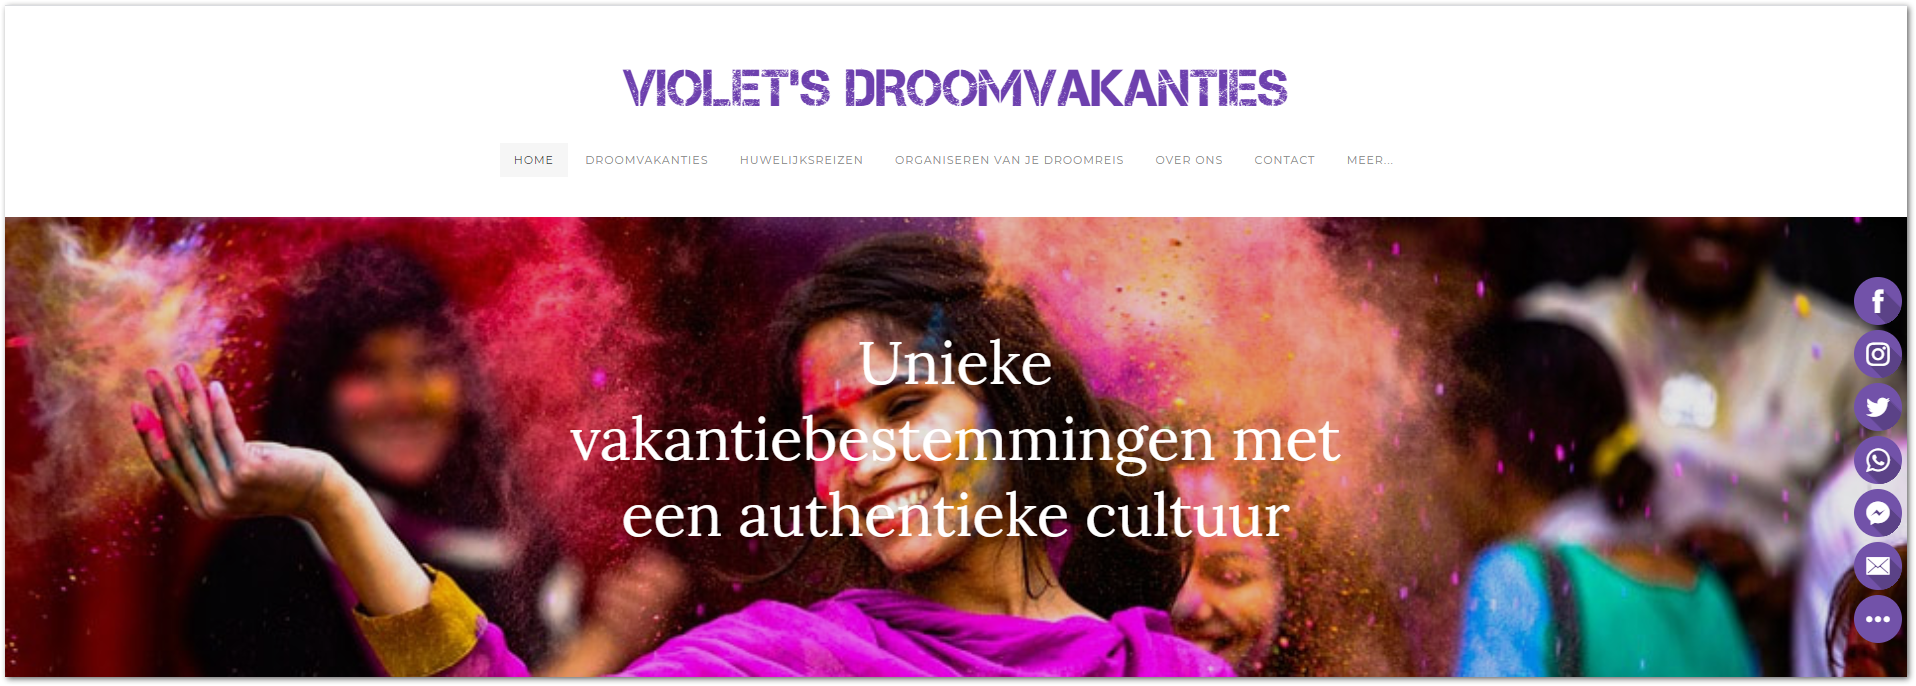 Violets.nl